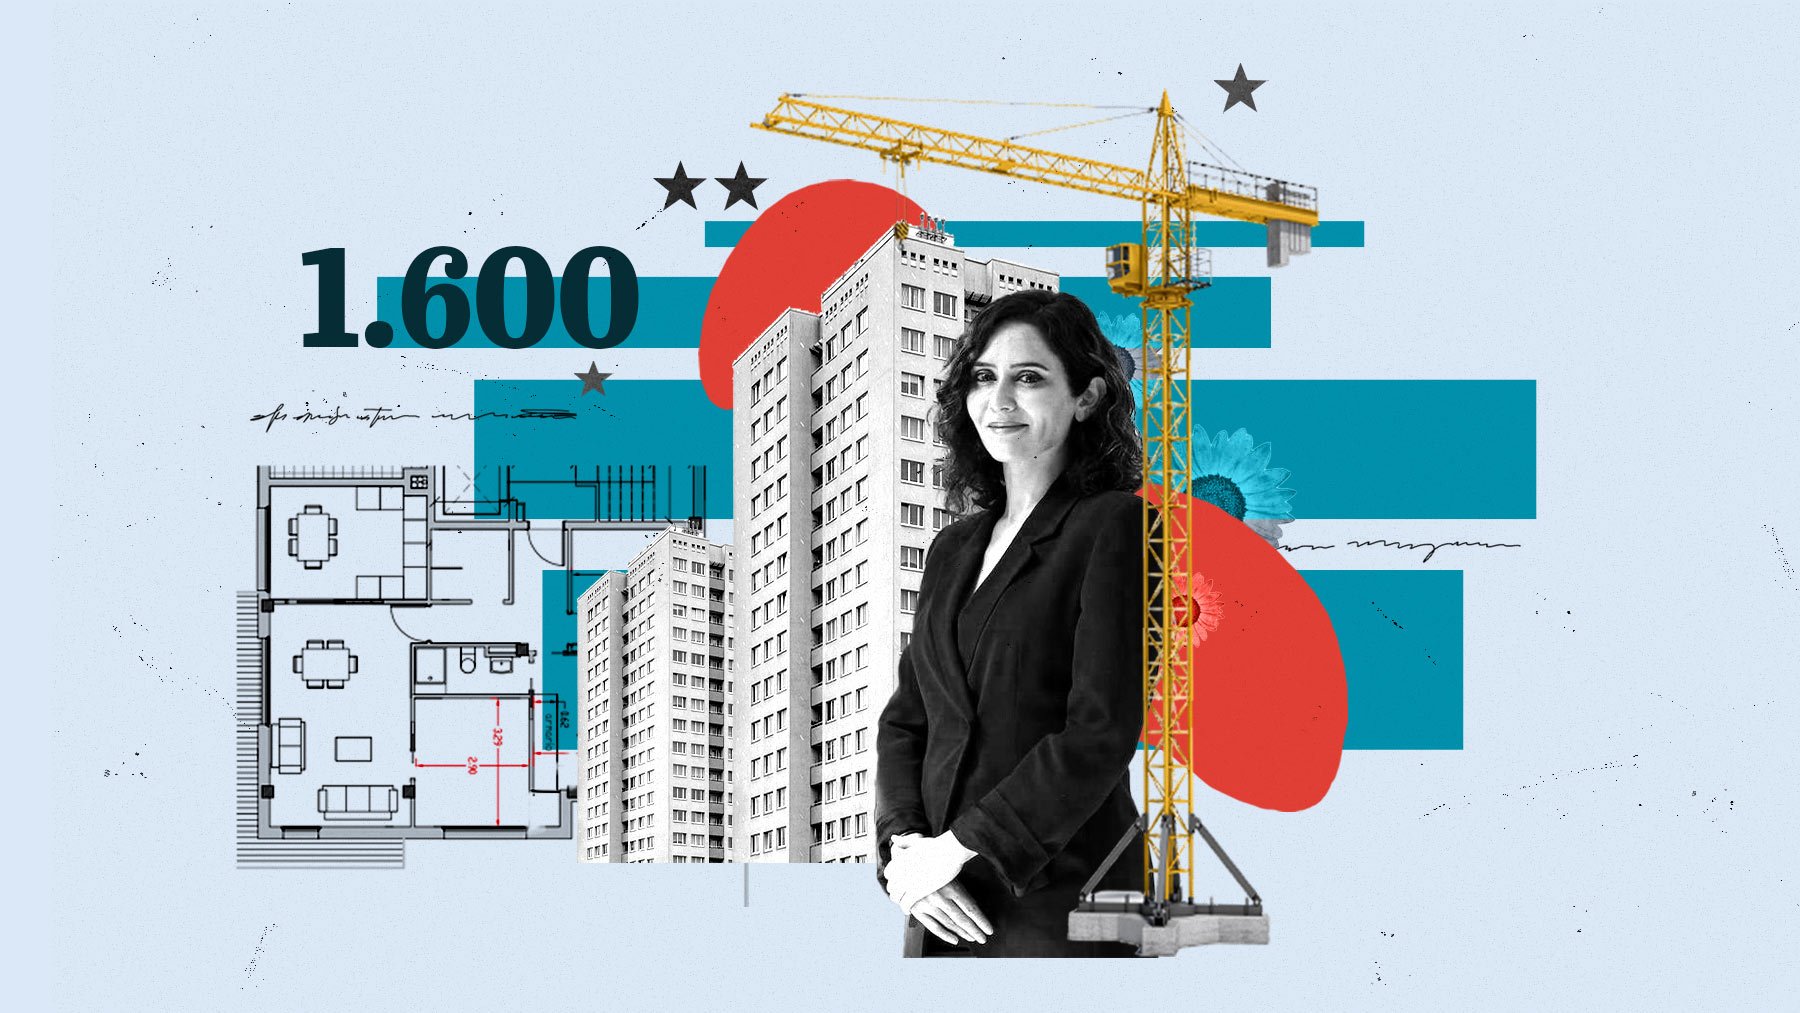 Más de 1.600 viviendas serán construidas en diferentes municipios de la Comunidad de Madrid antes del 30 de junio de 2026.